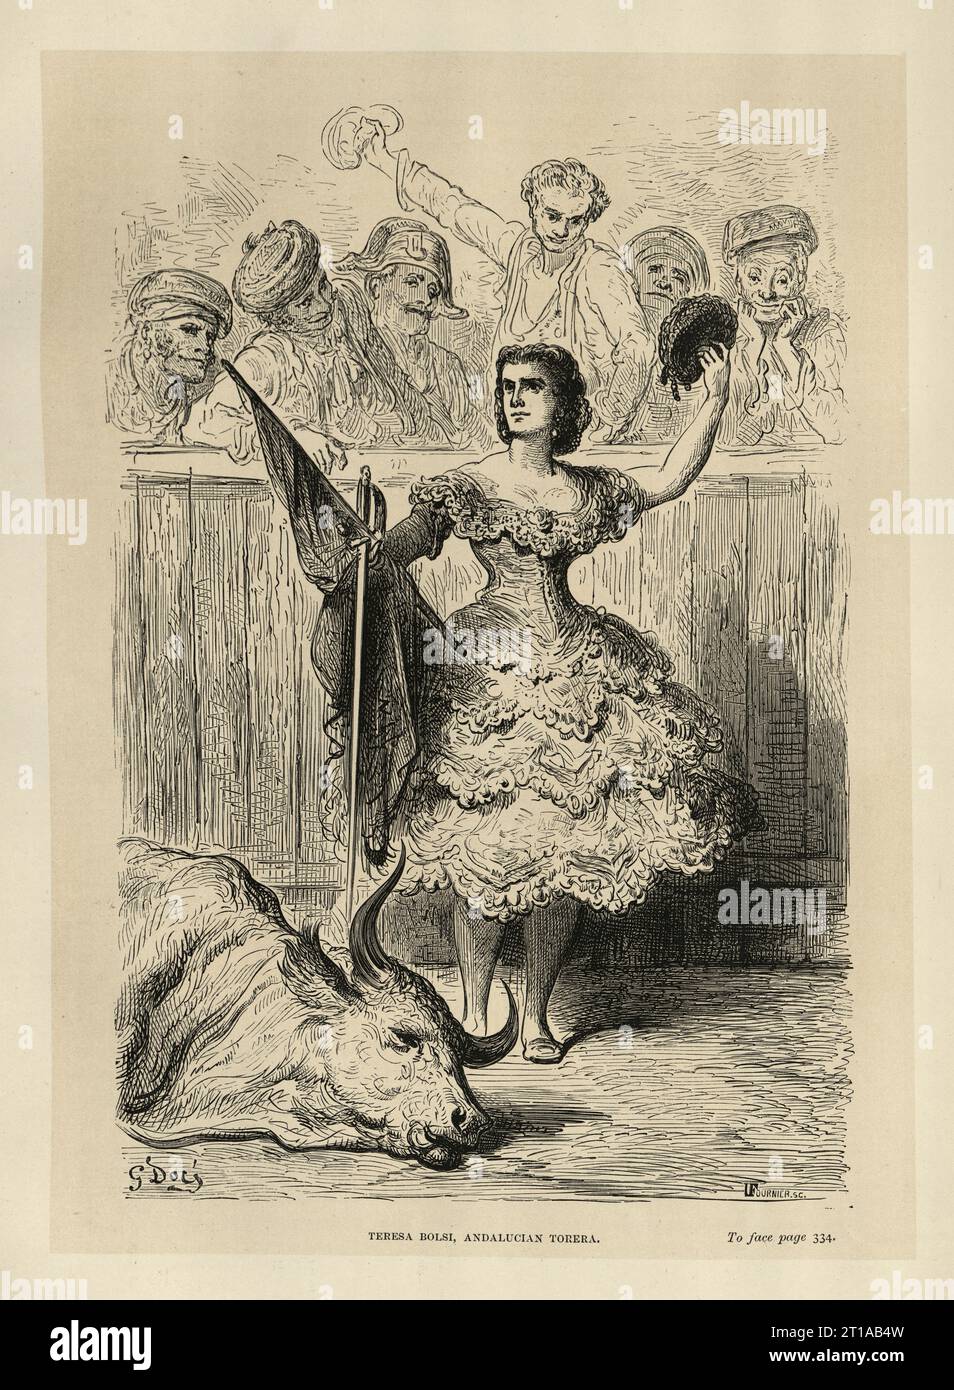 Illustration vintage de Gustave Dore, Teresa Bolsi, torero andalou, Séville, Espagne 19e siècle. Banque D'Images